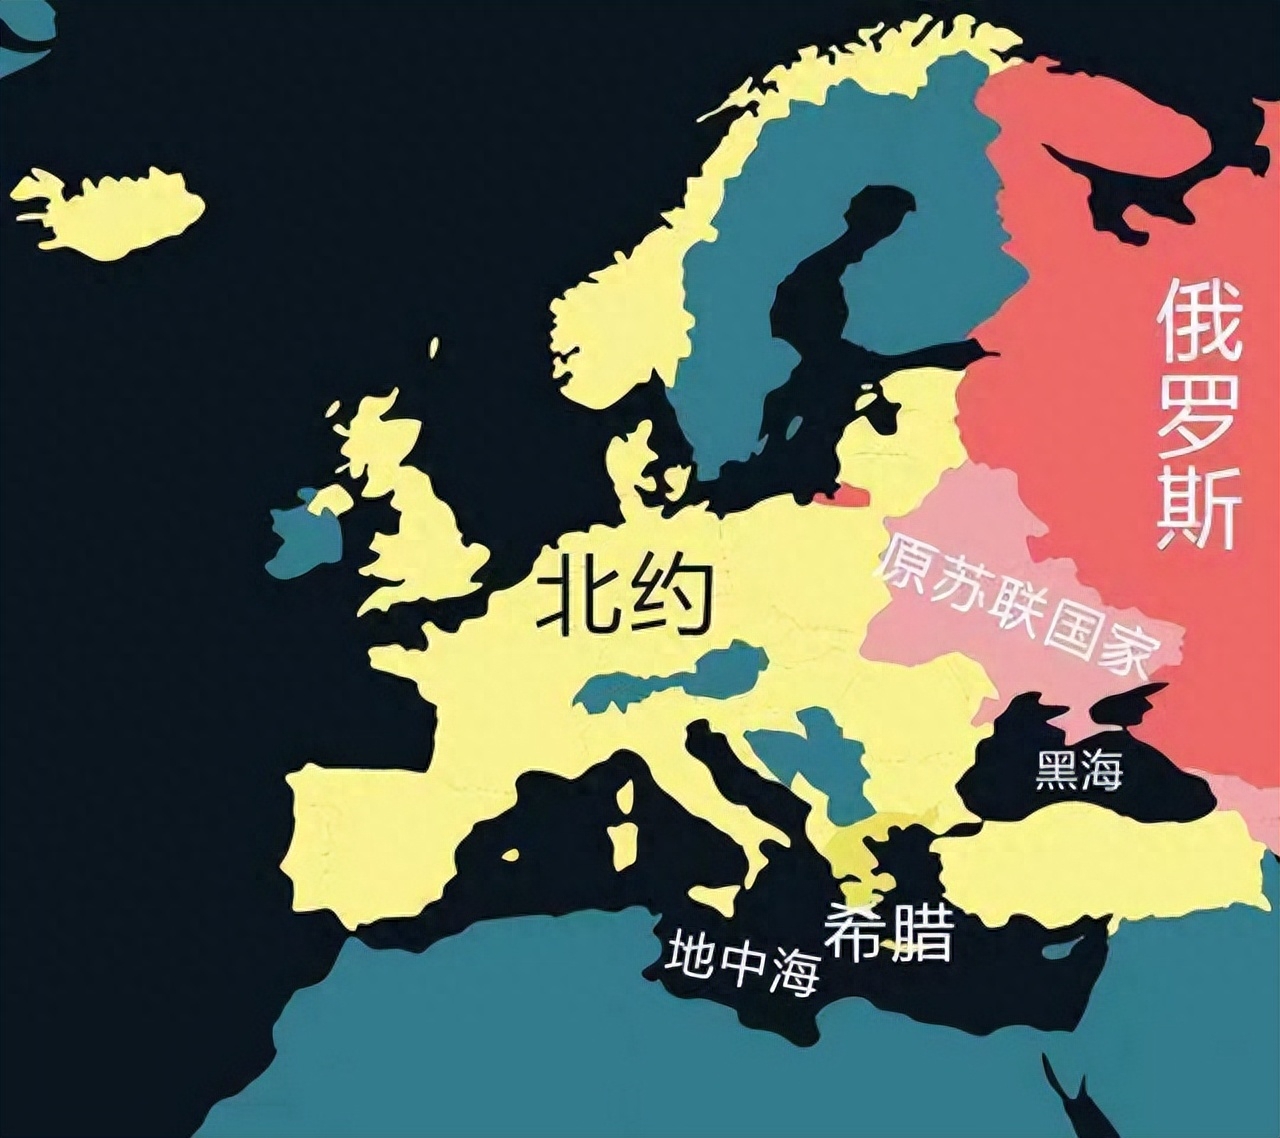 欧盟有多少个成员国，欧盟与北约的区别在哪里-梦路生活号